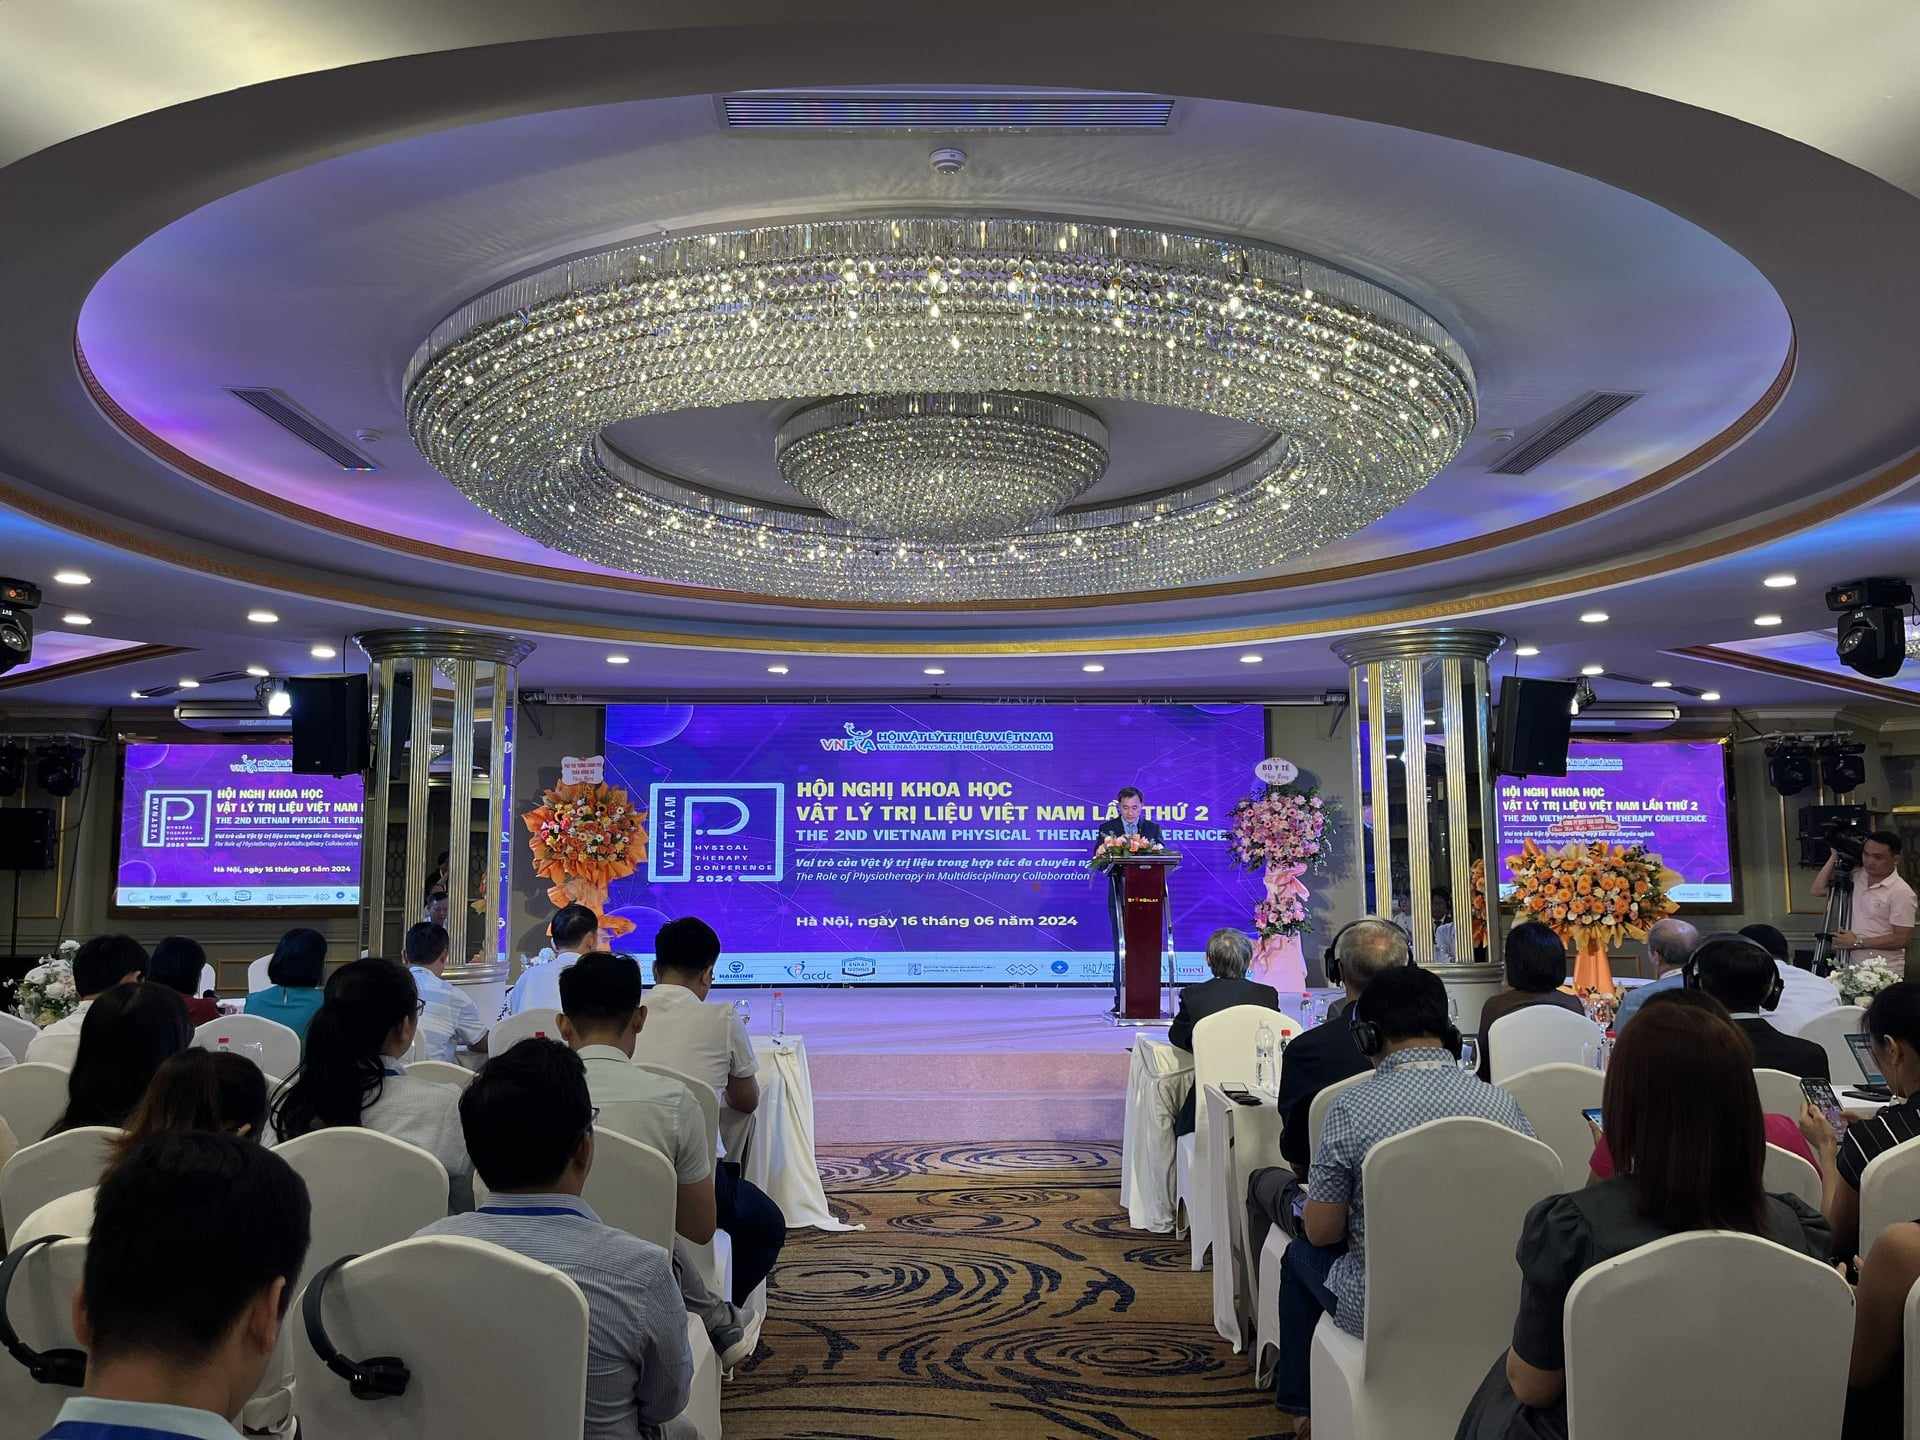 Hội nghị khoa học vật lý trị liệu Việt Nam lần thứ 2: Vai trò của Vật lý trị liệu trong hợp tác đa chuyên ngành- Ảnh 2.